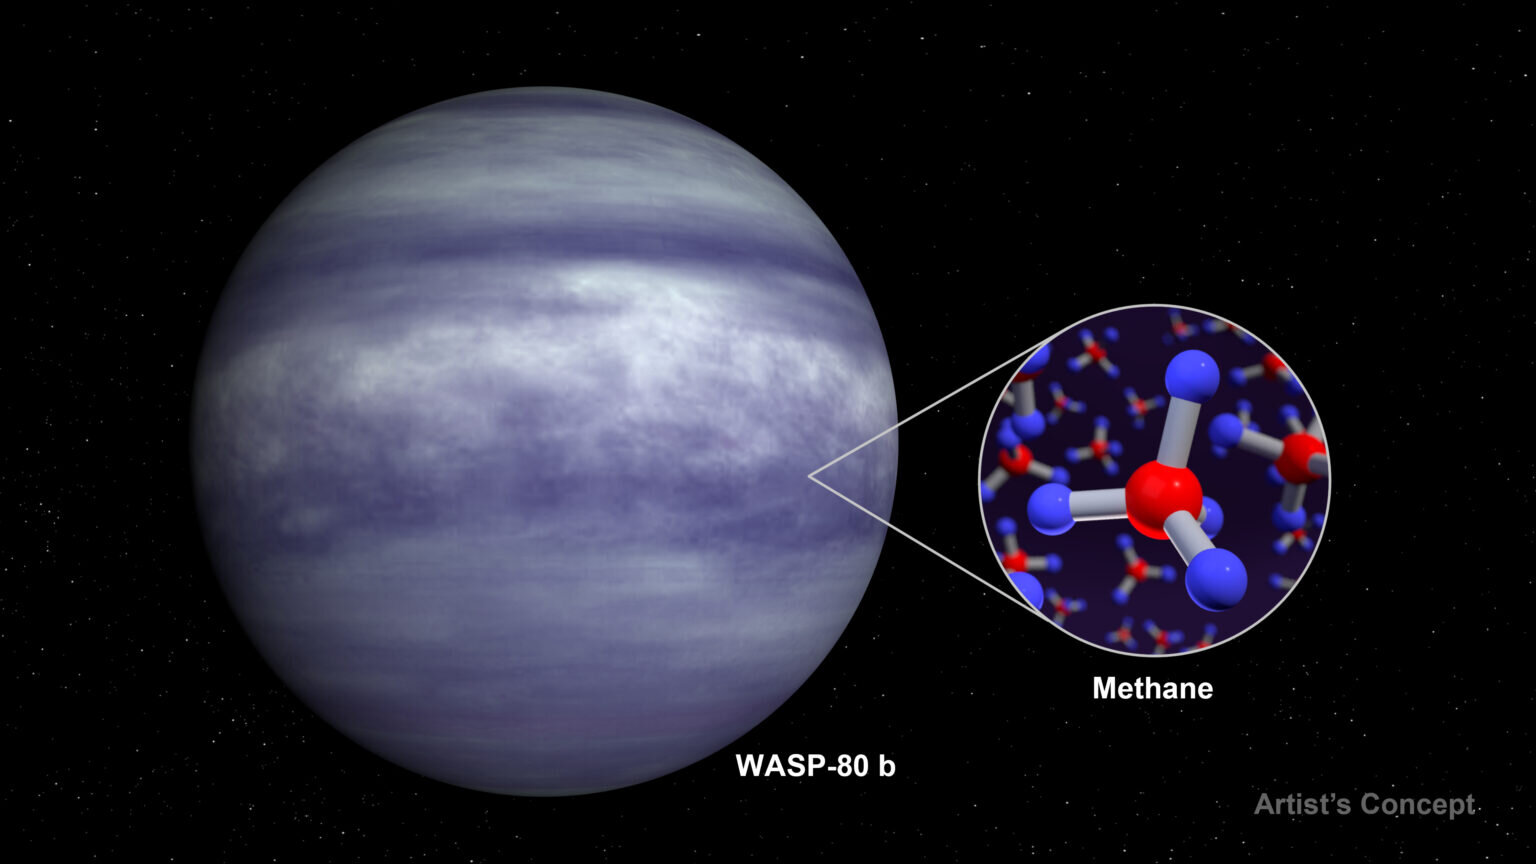 Webb identifies methane in the atmosphere of an exoplanet